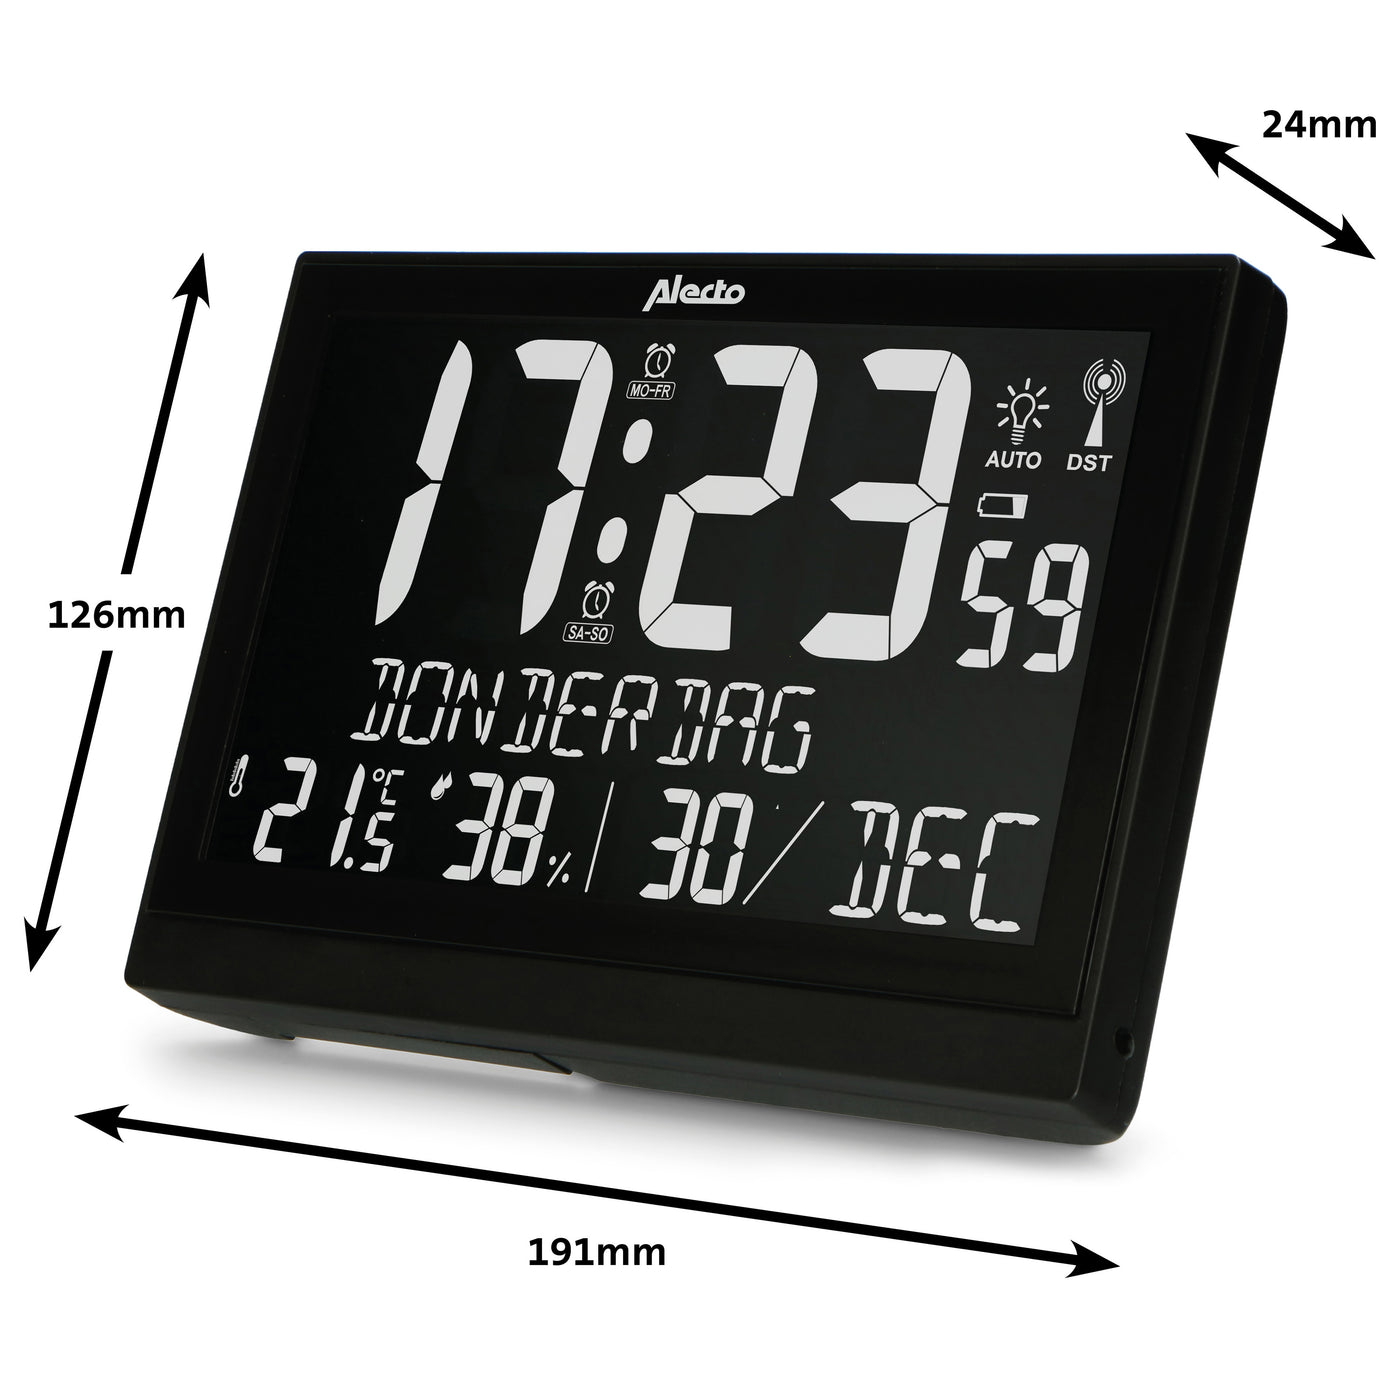 Alecto AK-70 - Große digitale Uhr mit Thermometer und Hygrometer, schwarz